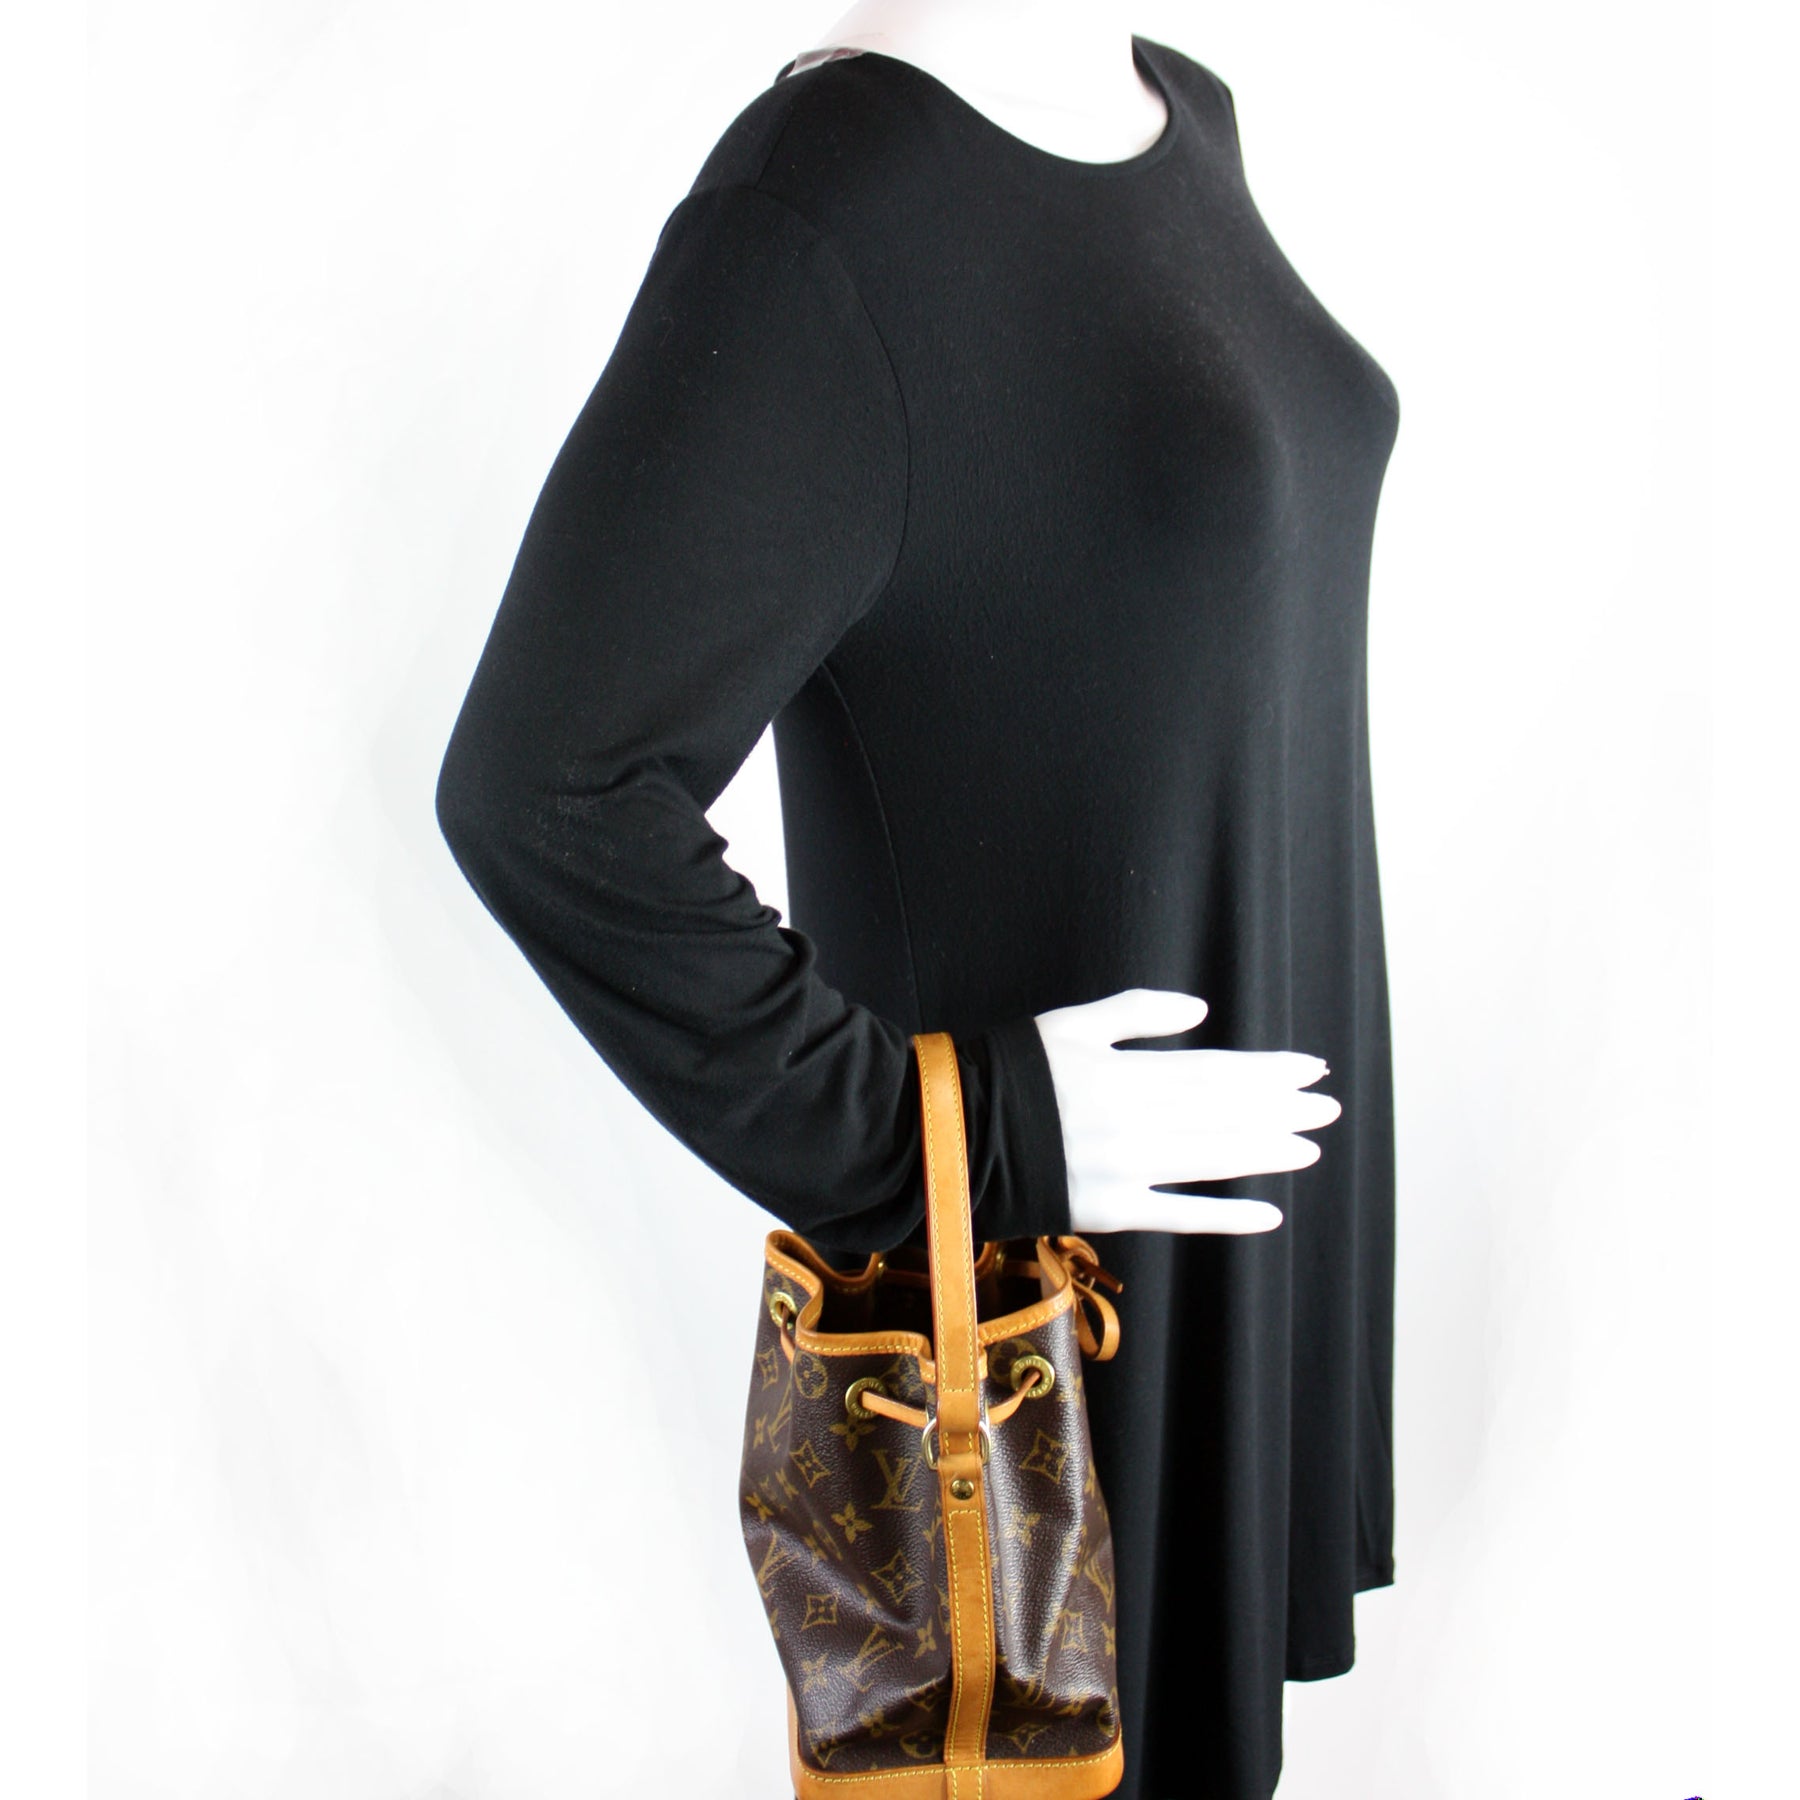 Noe Mini Monogram – Keeks Designer Handbags